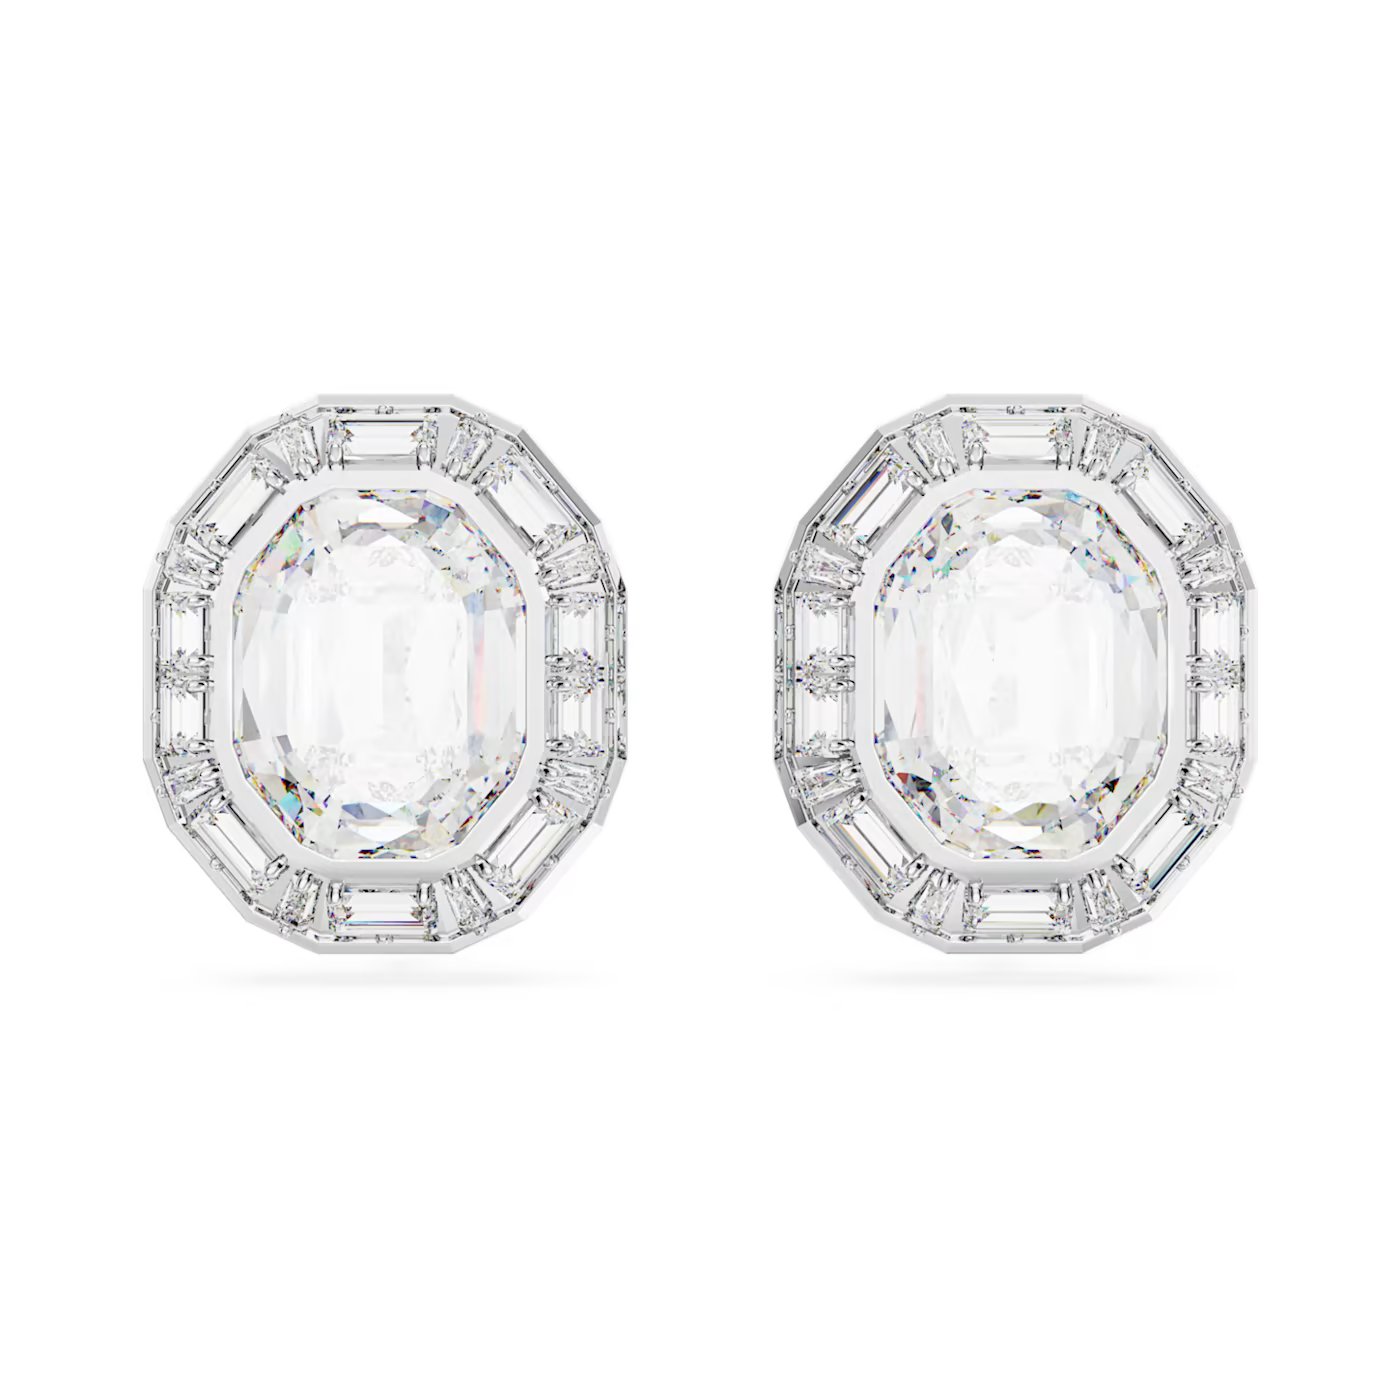 64dbbd8bd6481_mesmera-clip-earrings--octagon-cut--white--rhodium-plated-swarovski-5669913.jpg